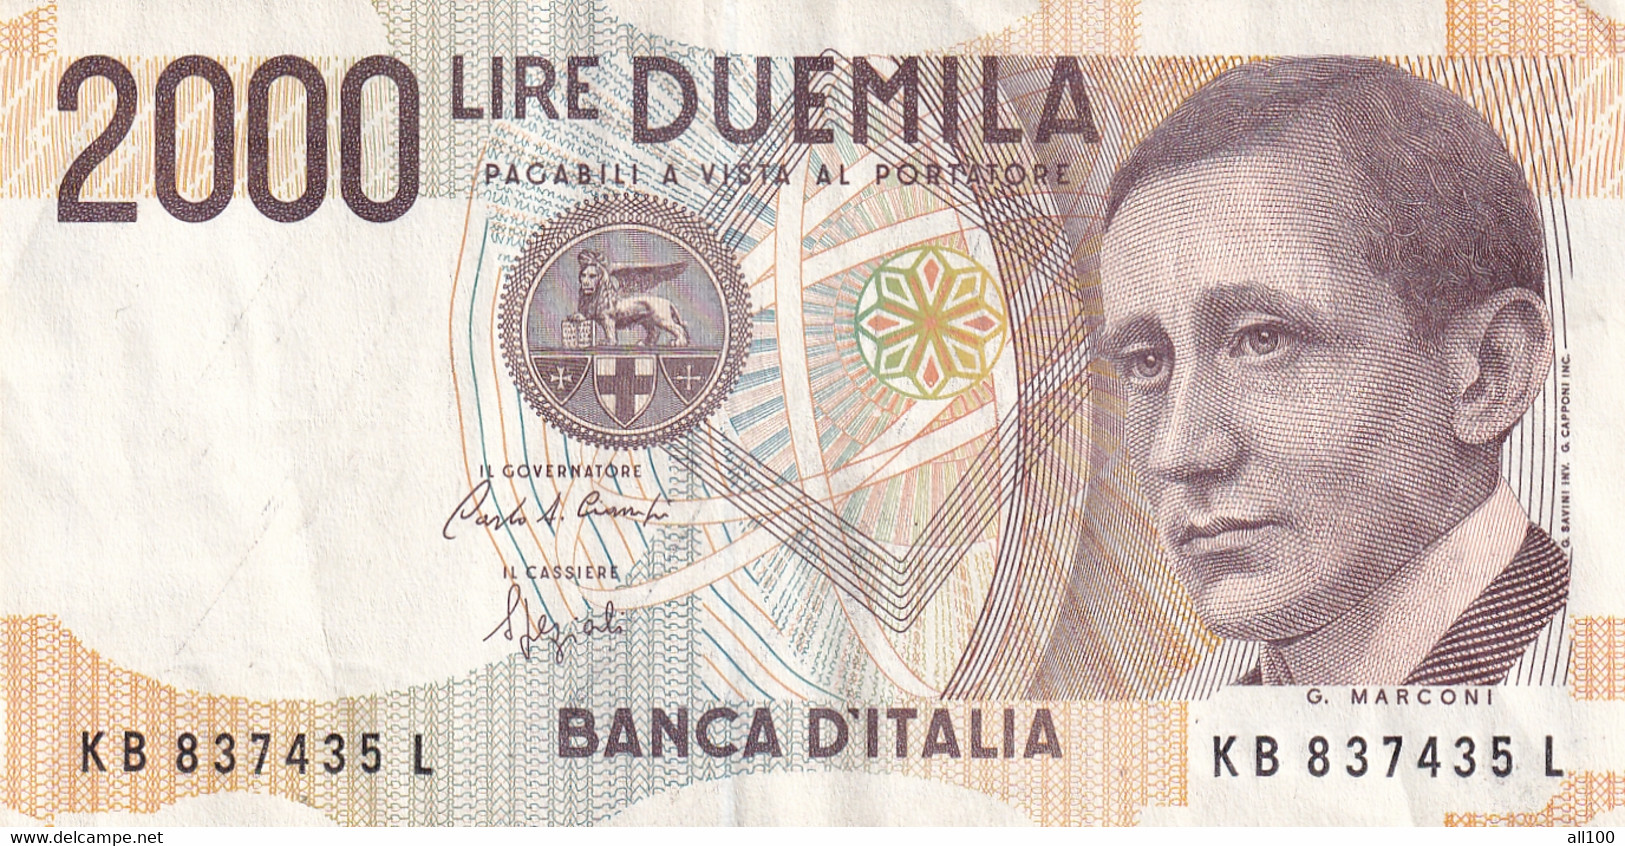 DUEMILA LIRE BANCA D'ITALIA DIRECTO MINISTERIALE 3 OTTOBRE 1990 2000 LIRE BANKNOTE GOOD CONDITION - 2000 Lire